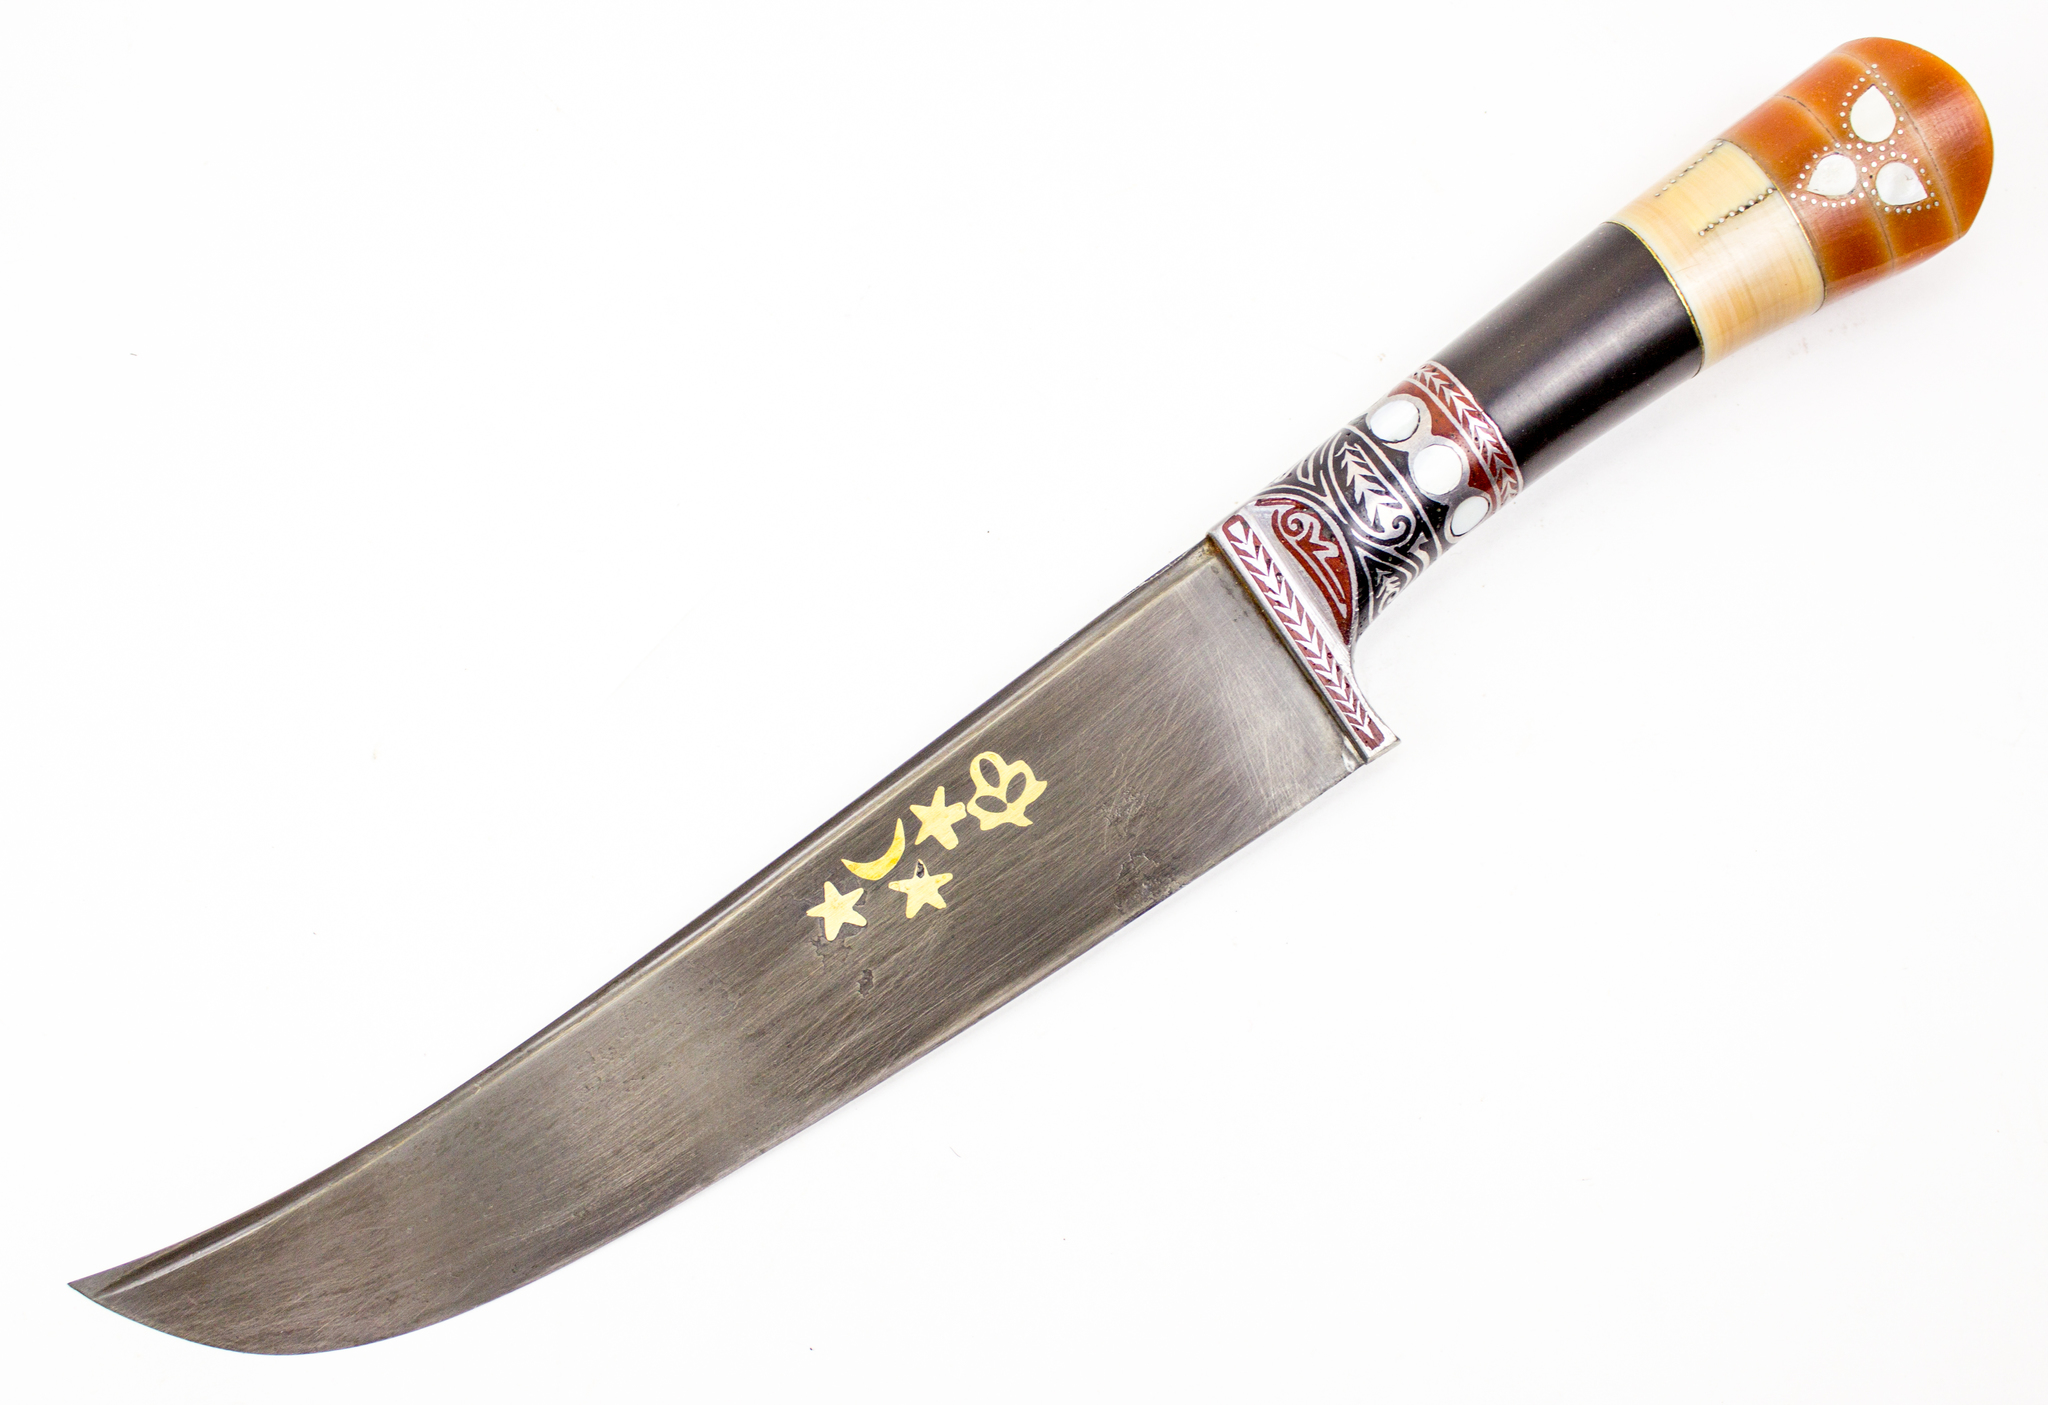 Ножевой tatar